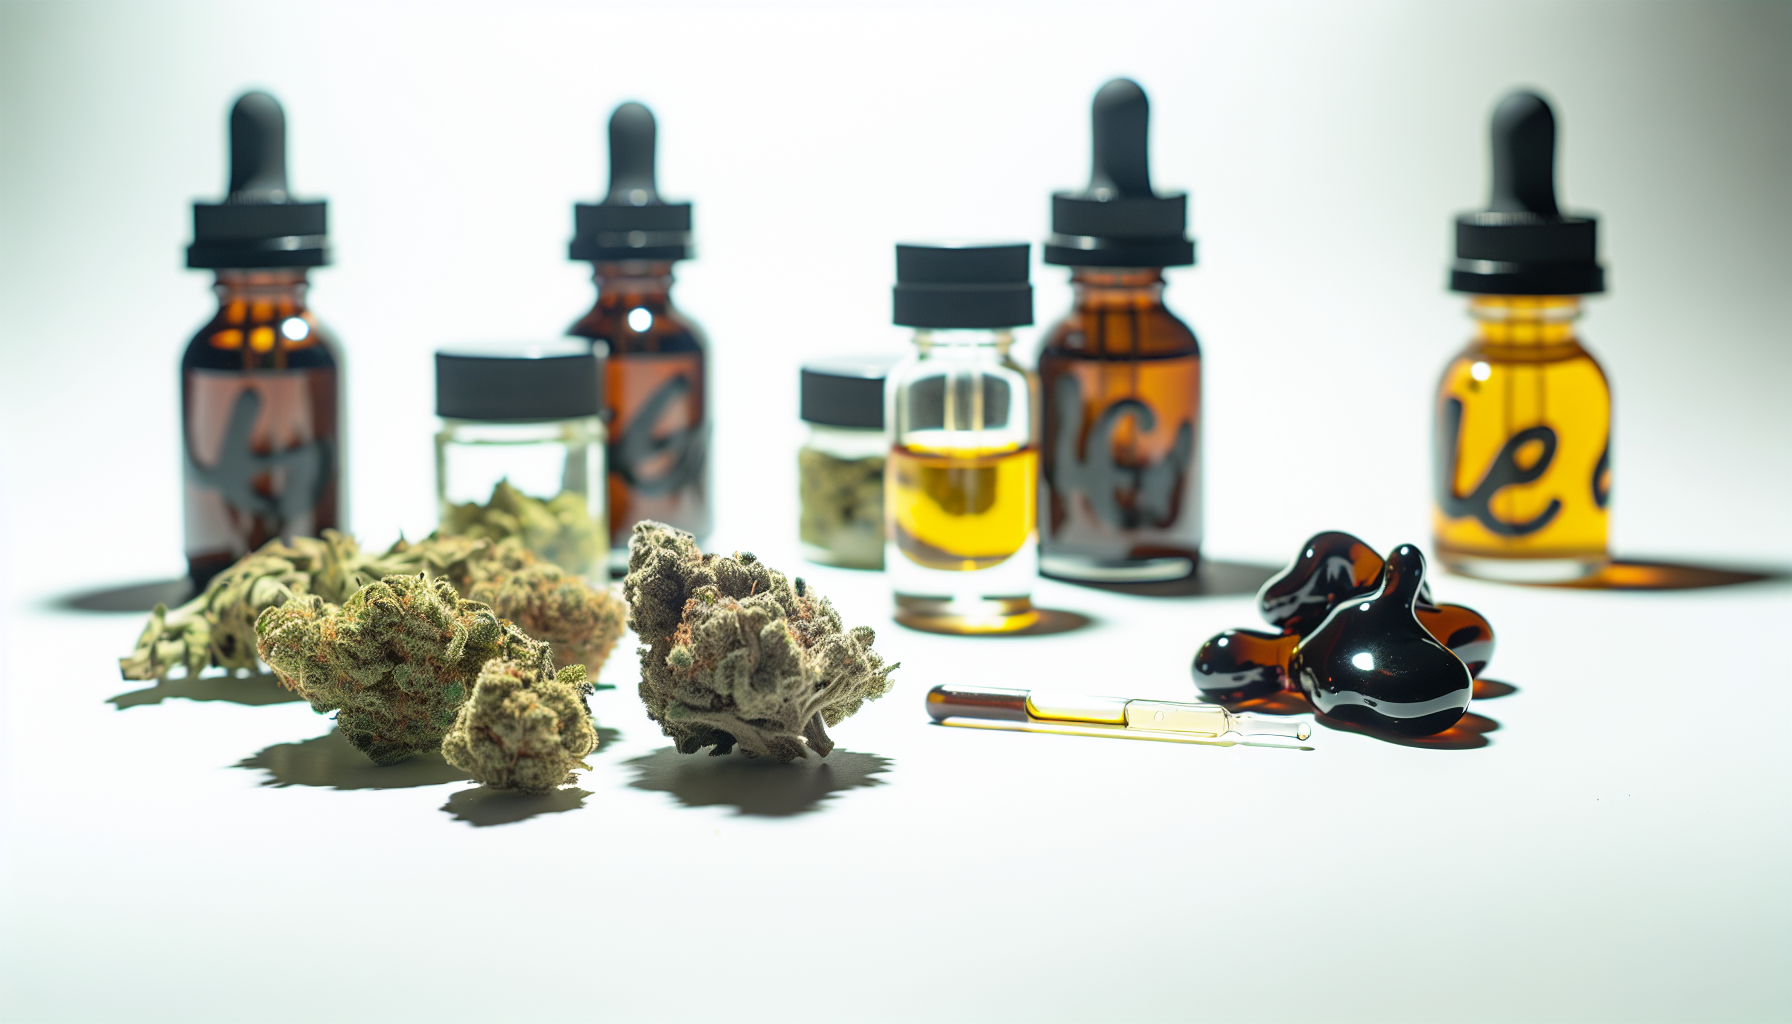 Verfügbare Produkte auf THCP-Basis, einschließlich Cannabisblüten